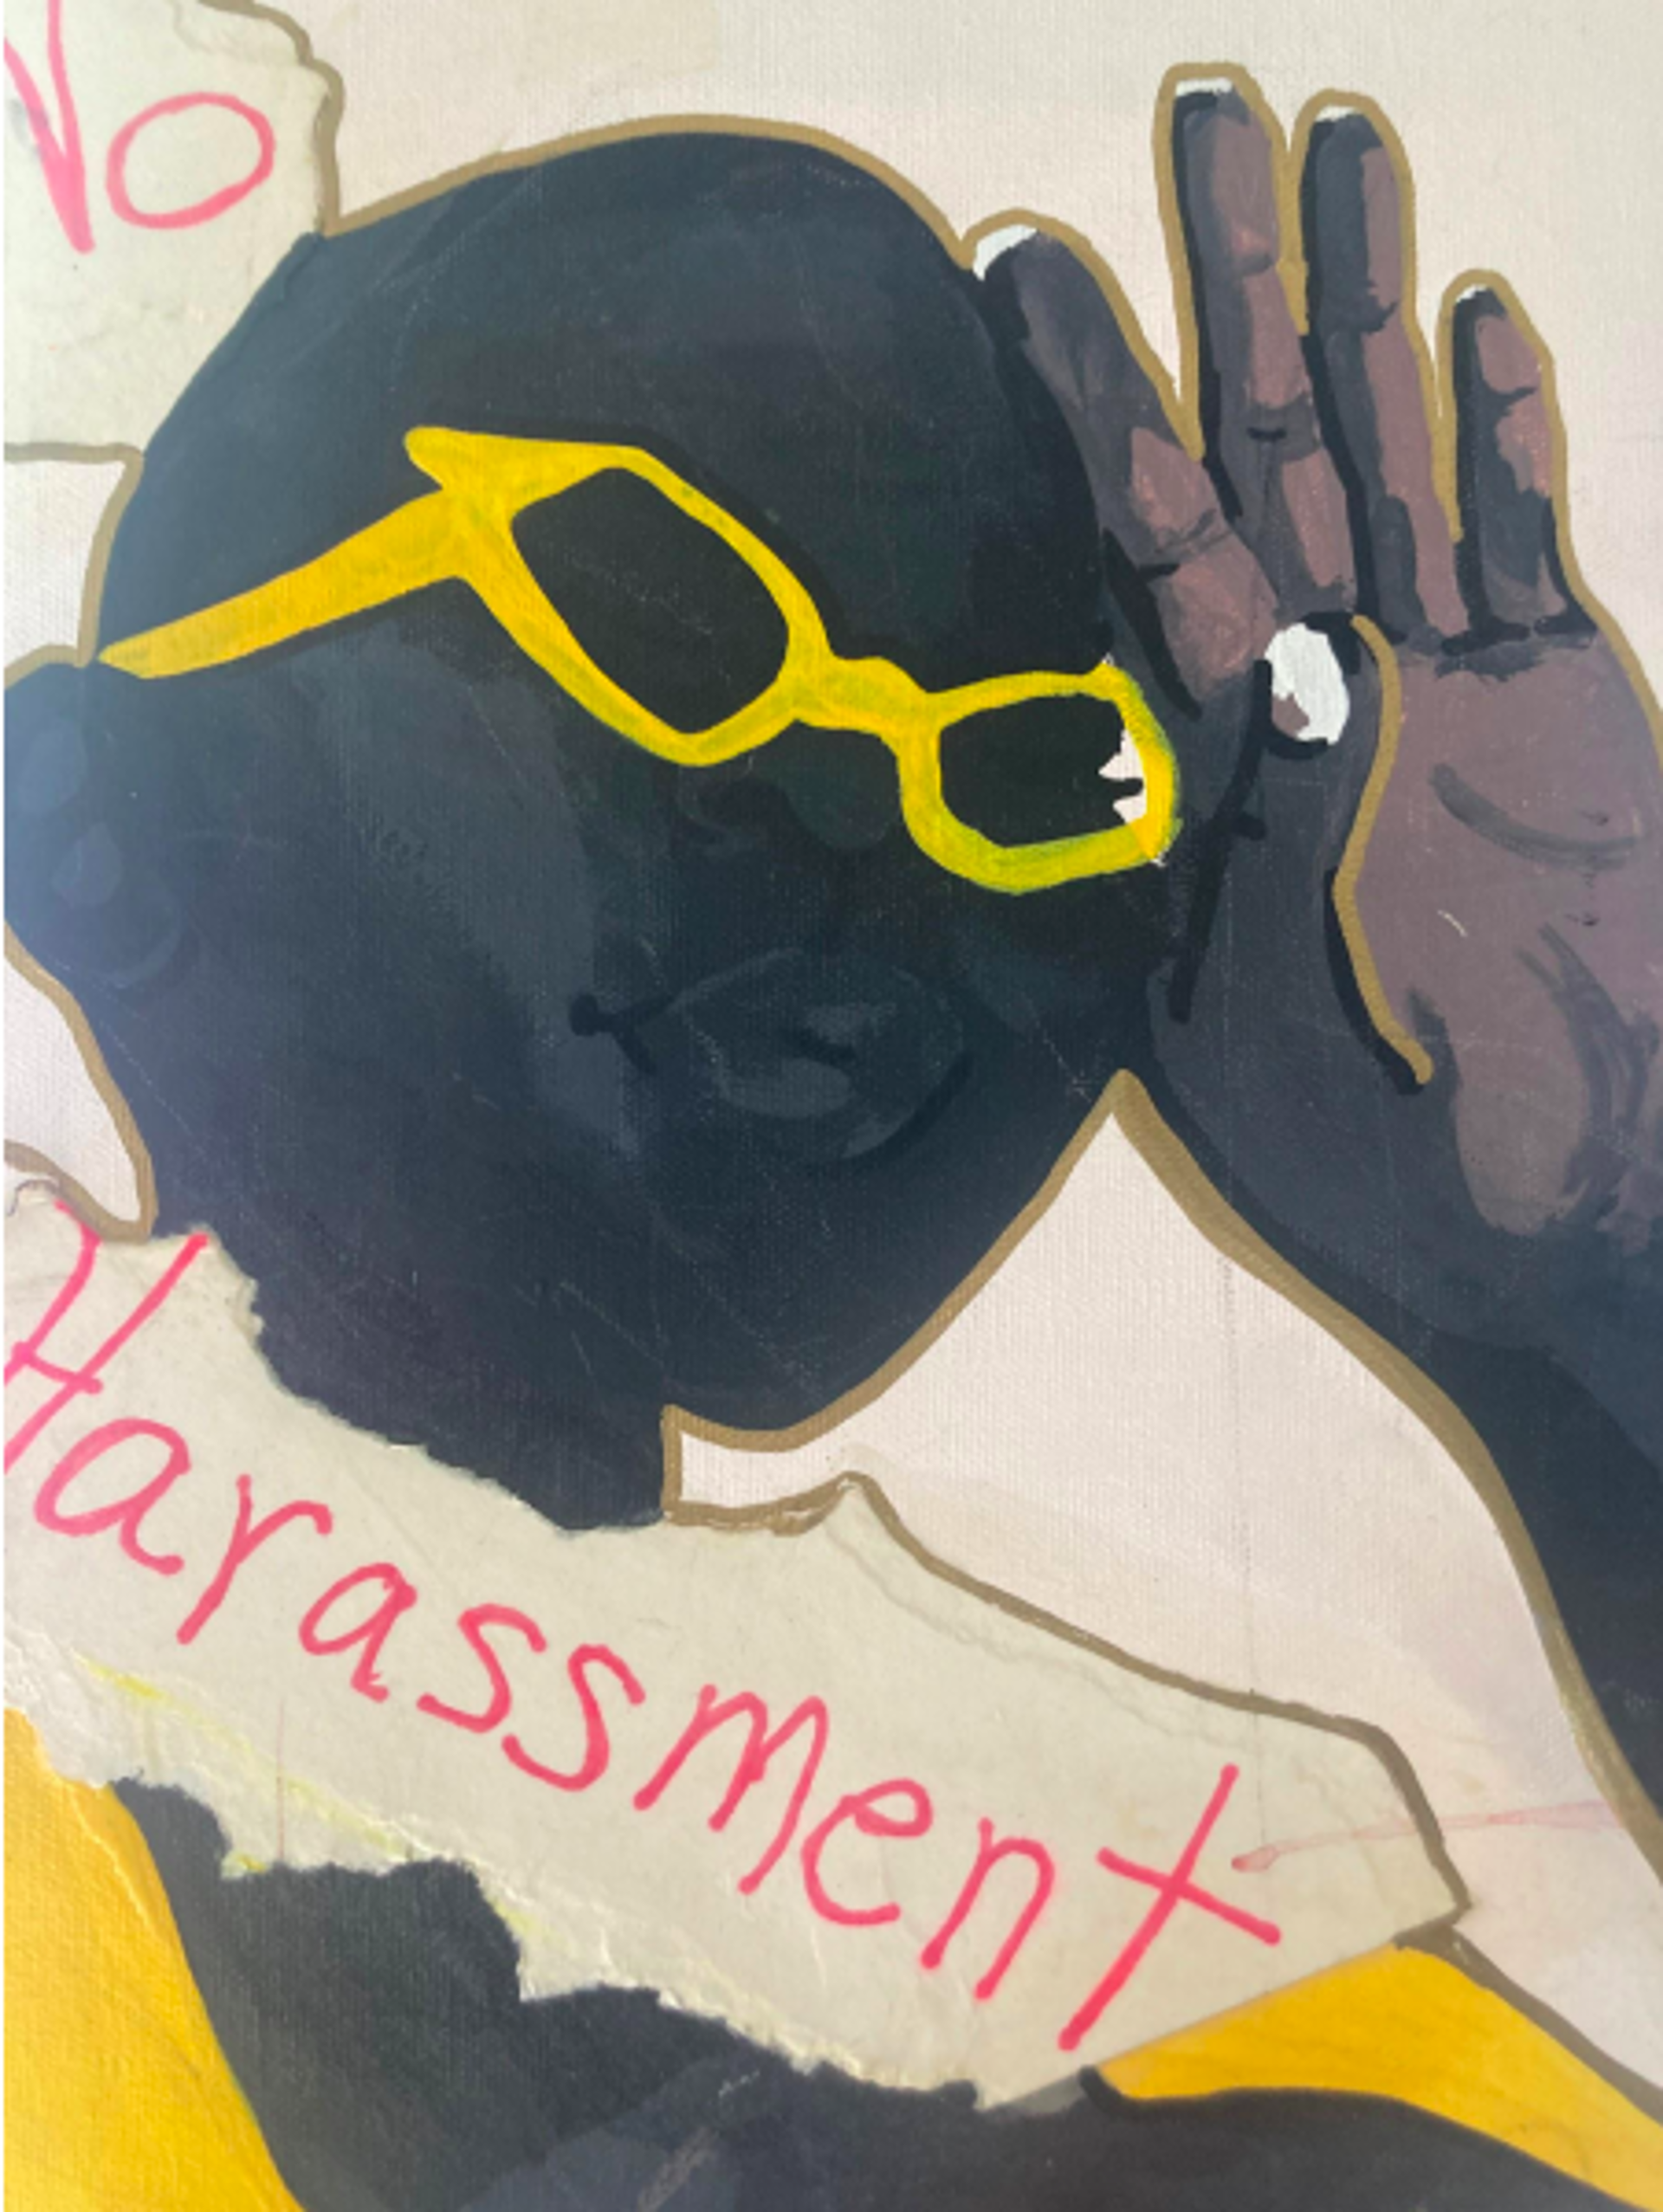 “No harassment” by Maya James